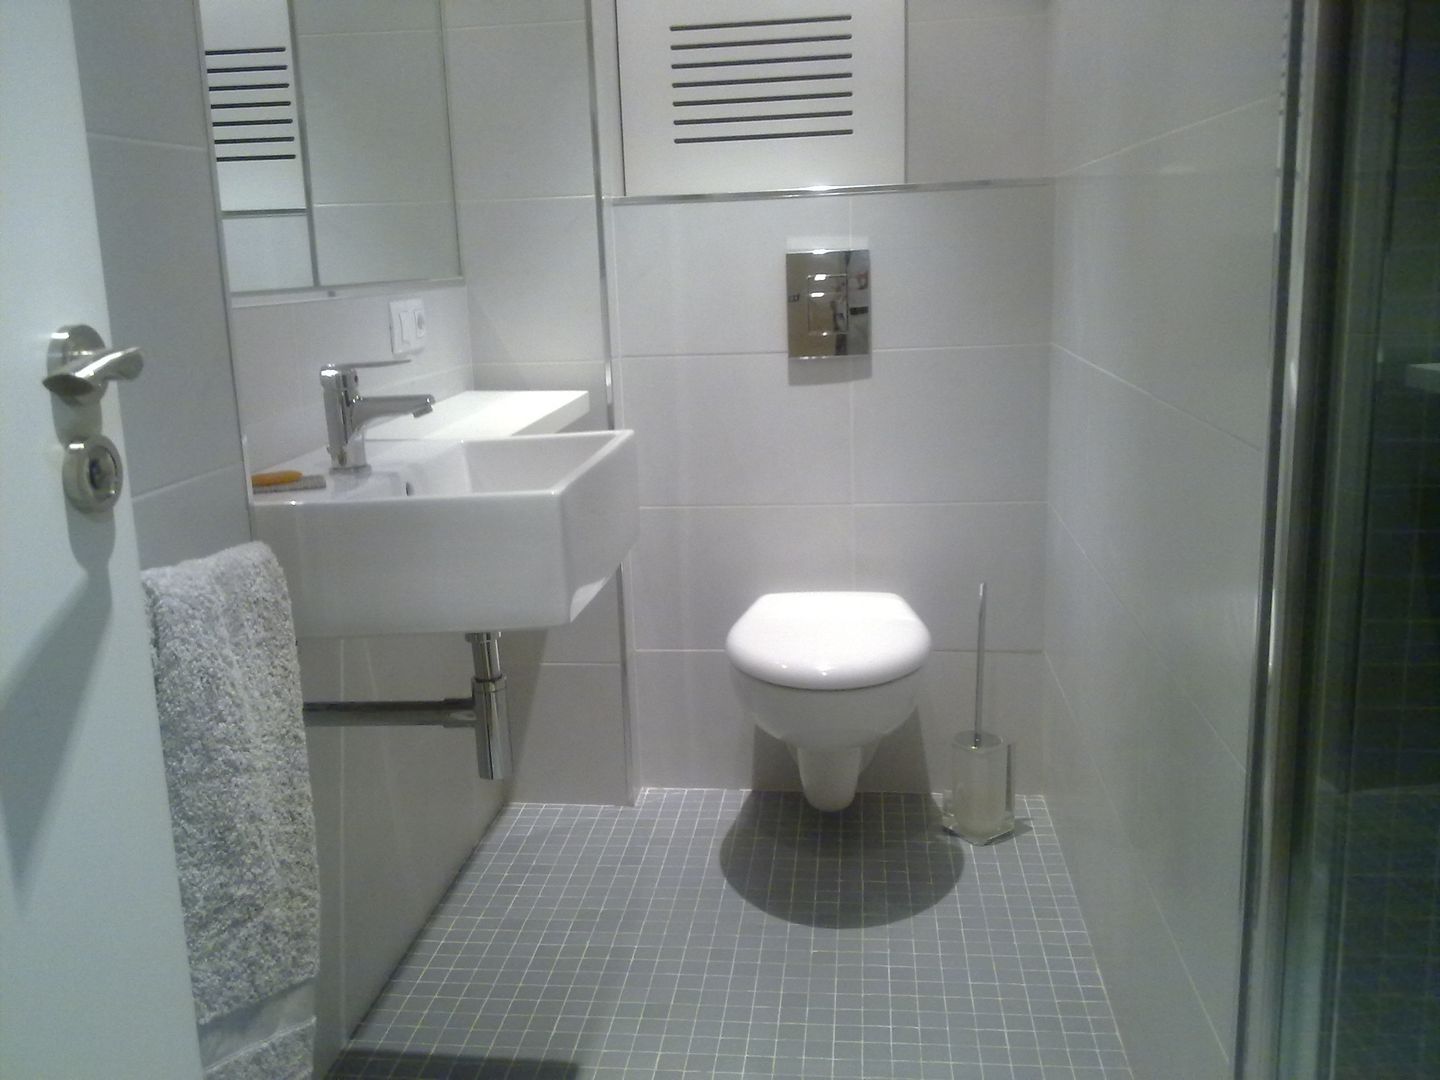 De aseo de cortesía a baño completo, Arquitectos Fin Arquitectos Fin ห้องน้ำ